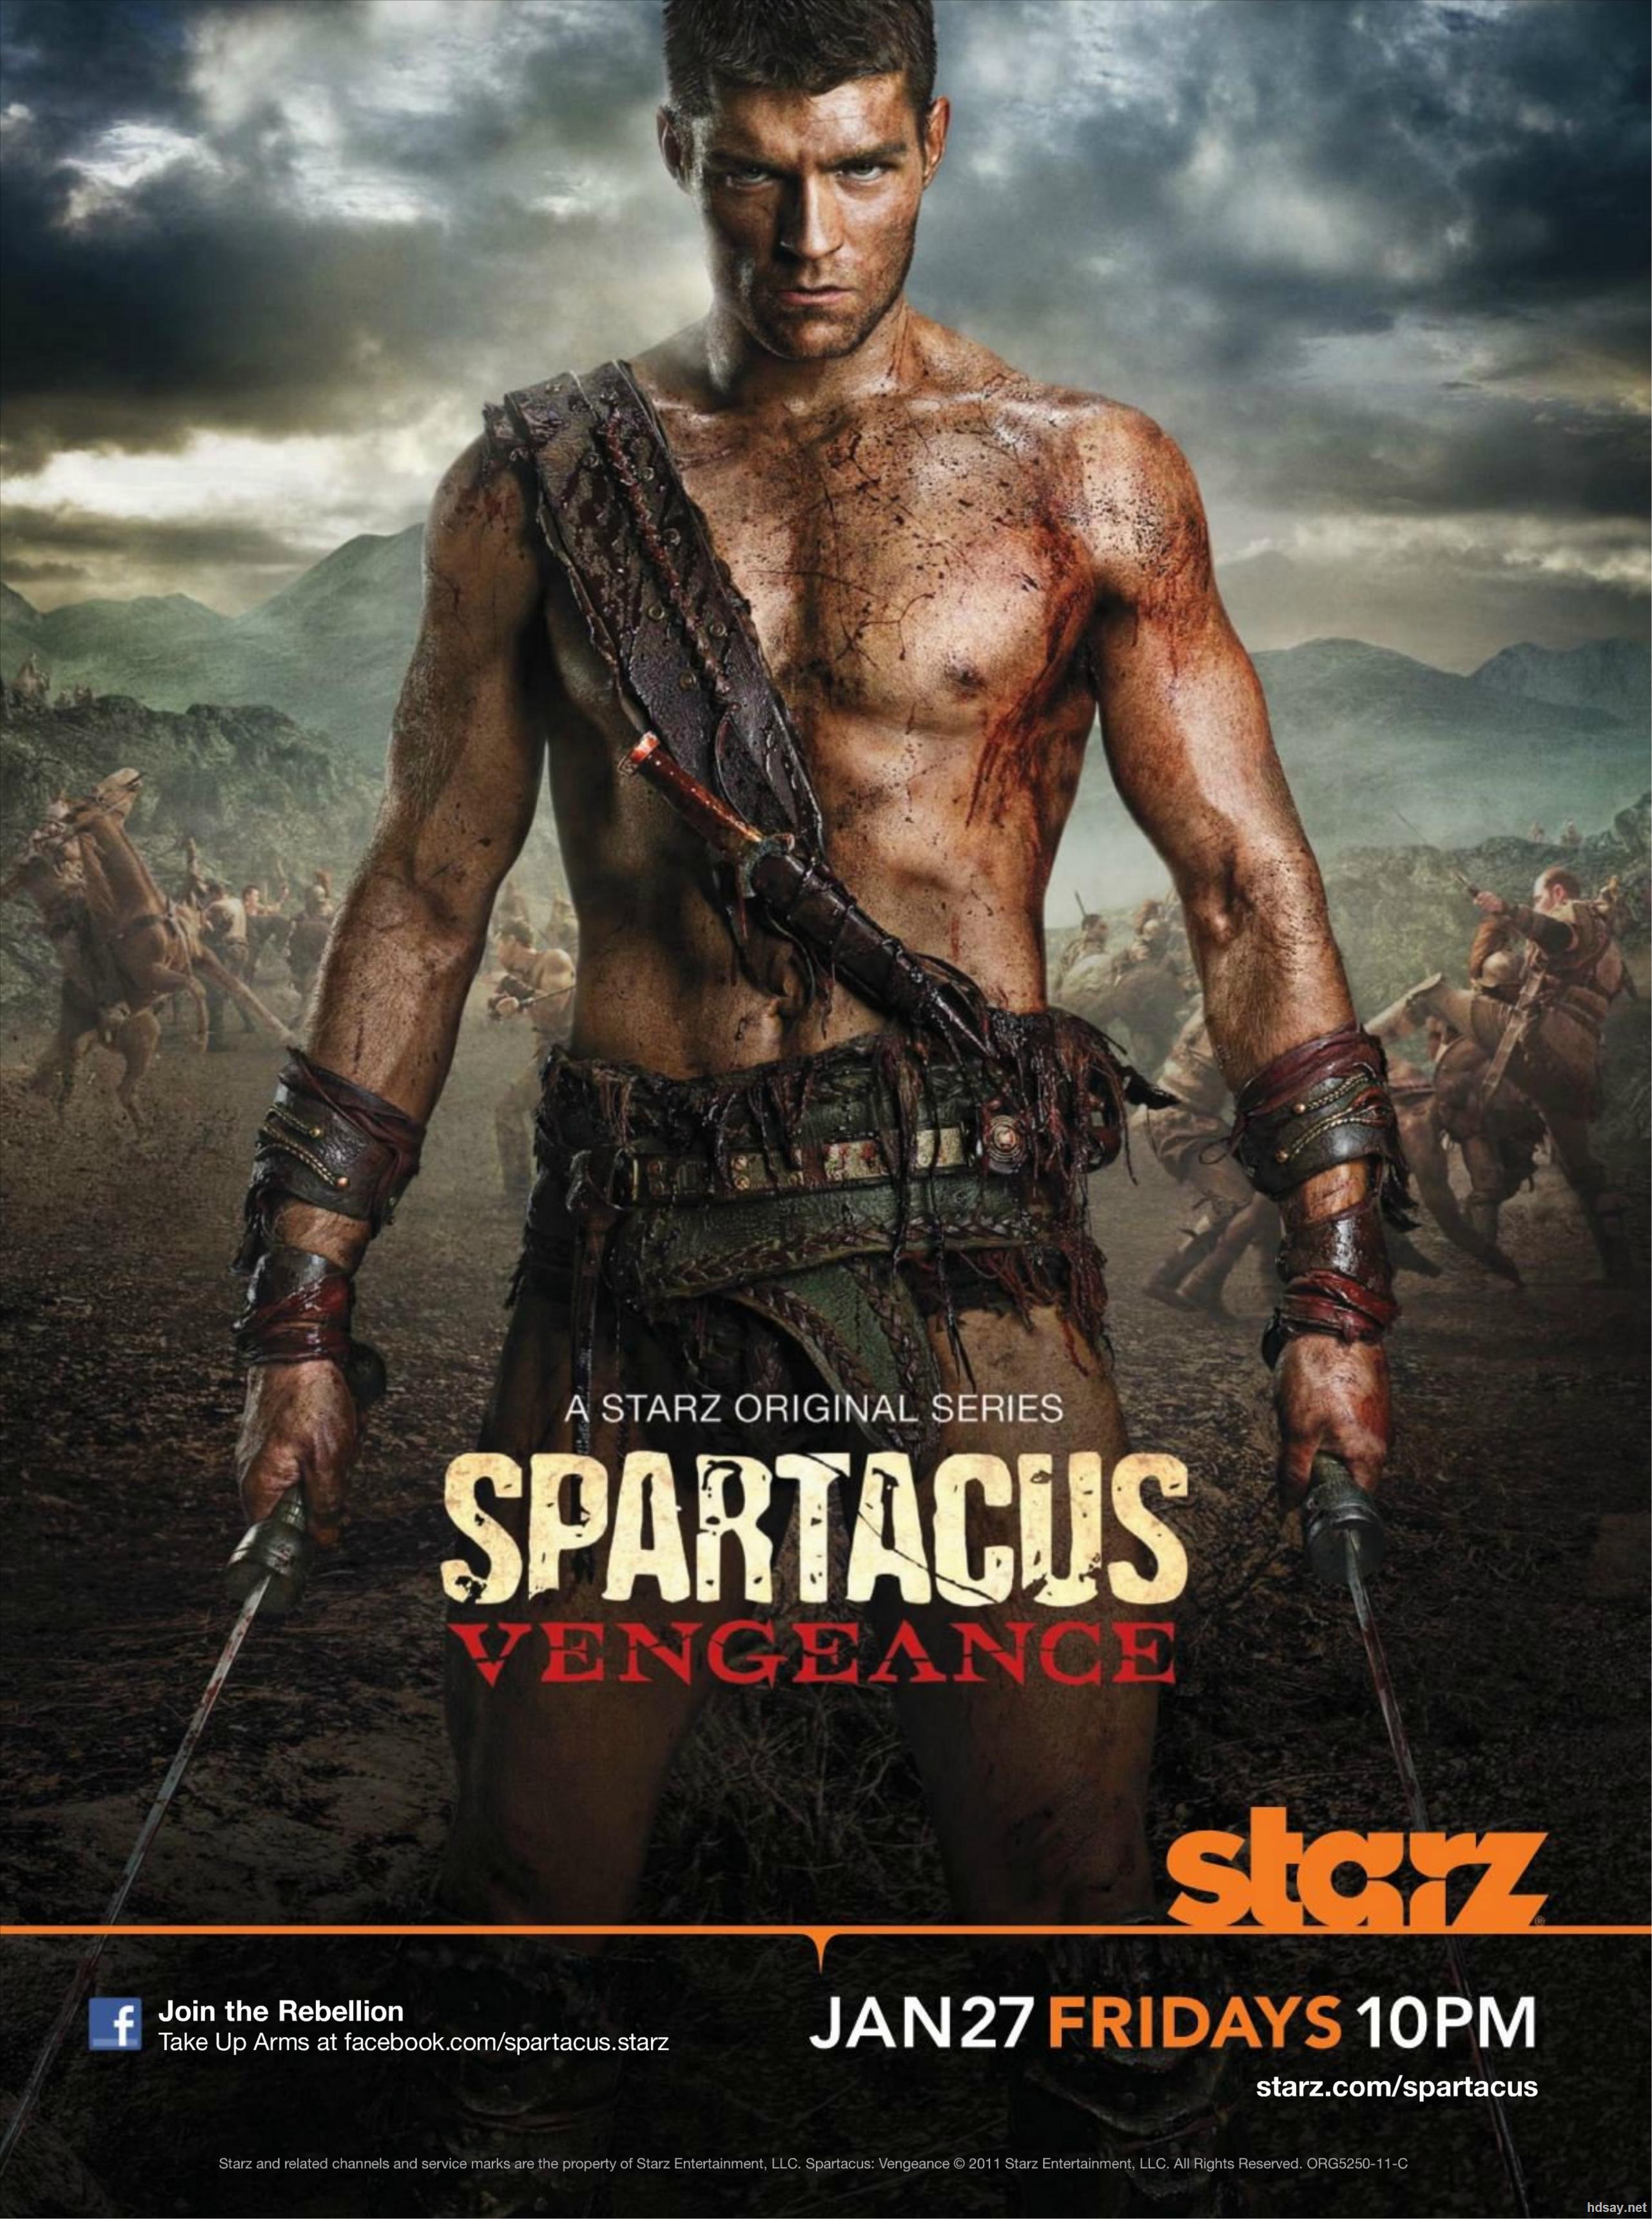 斯巴达克斯:诅咒者之战 第3季(Spartacus: War of the Damned Season 3)-电视剧-腾讯视频